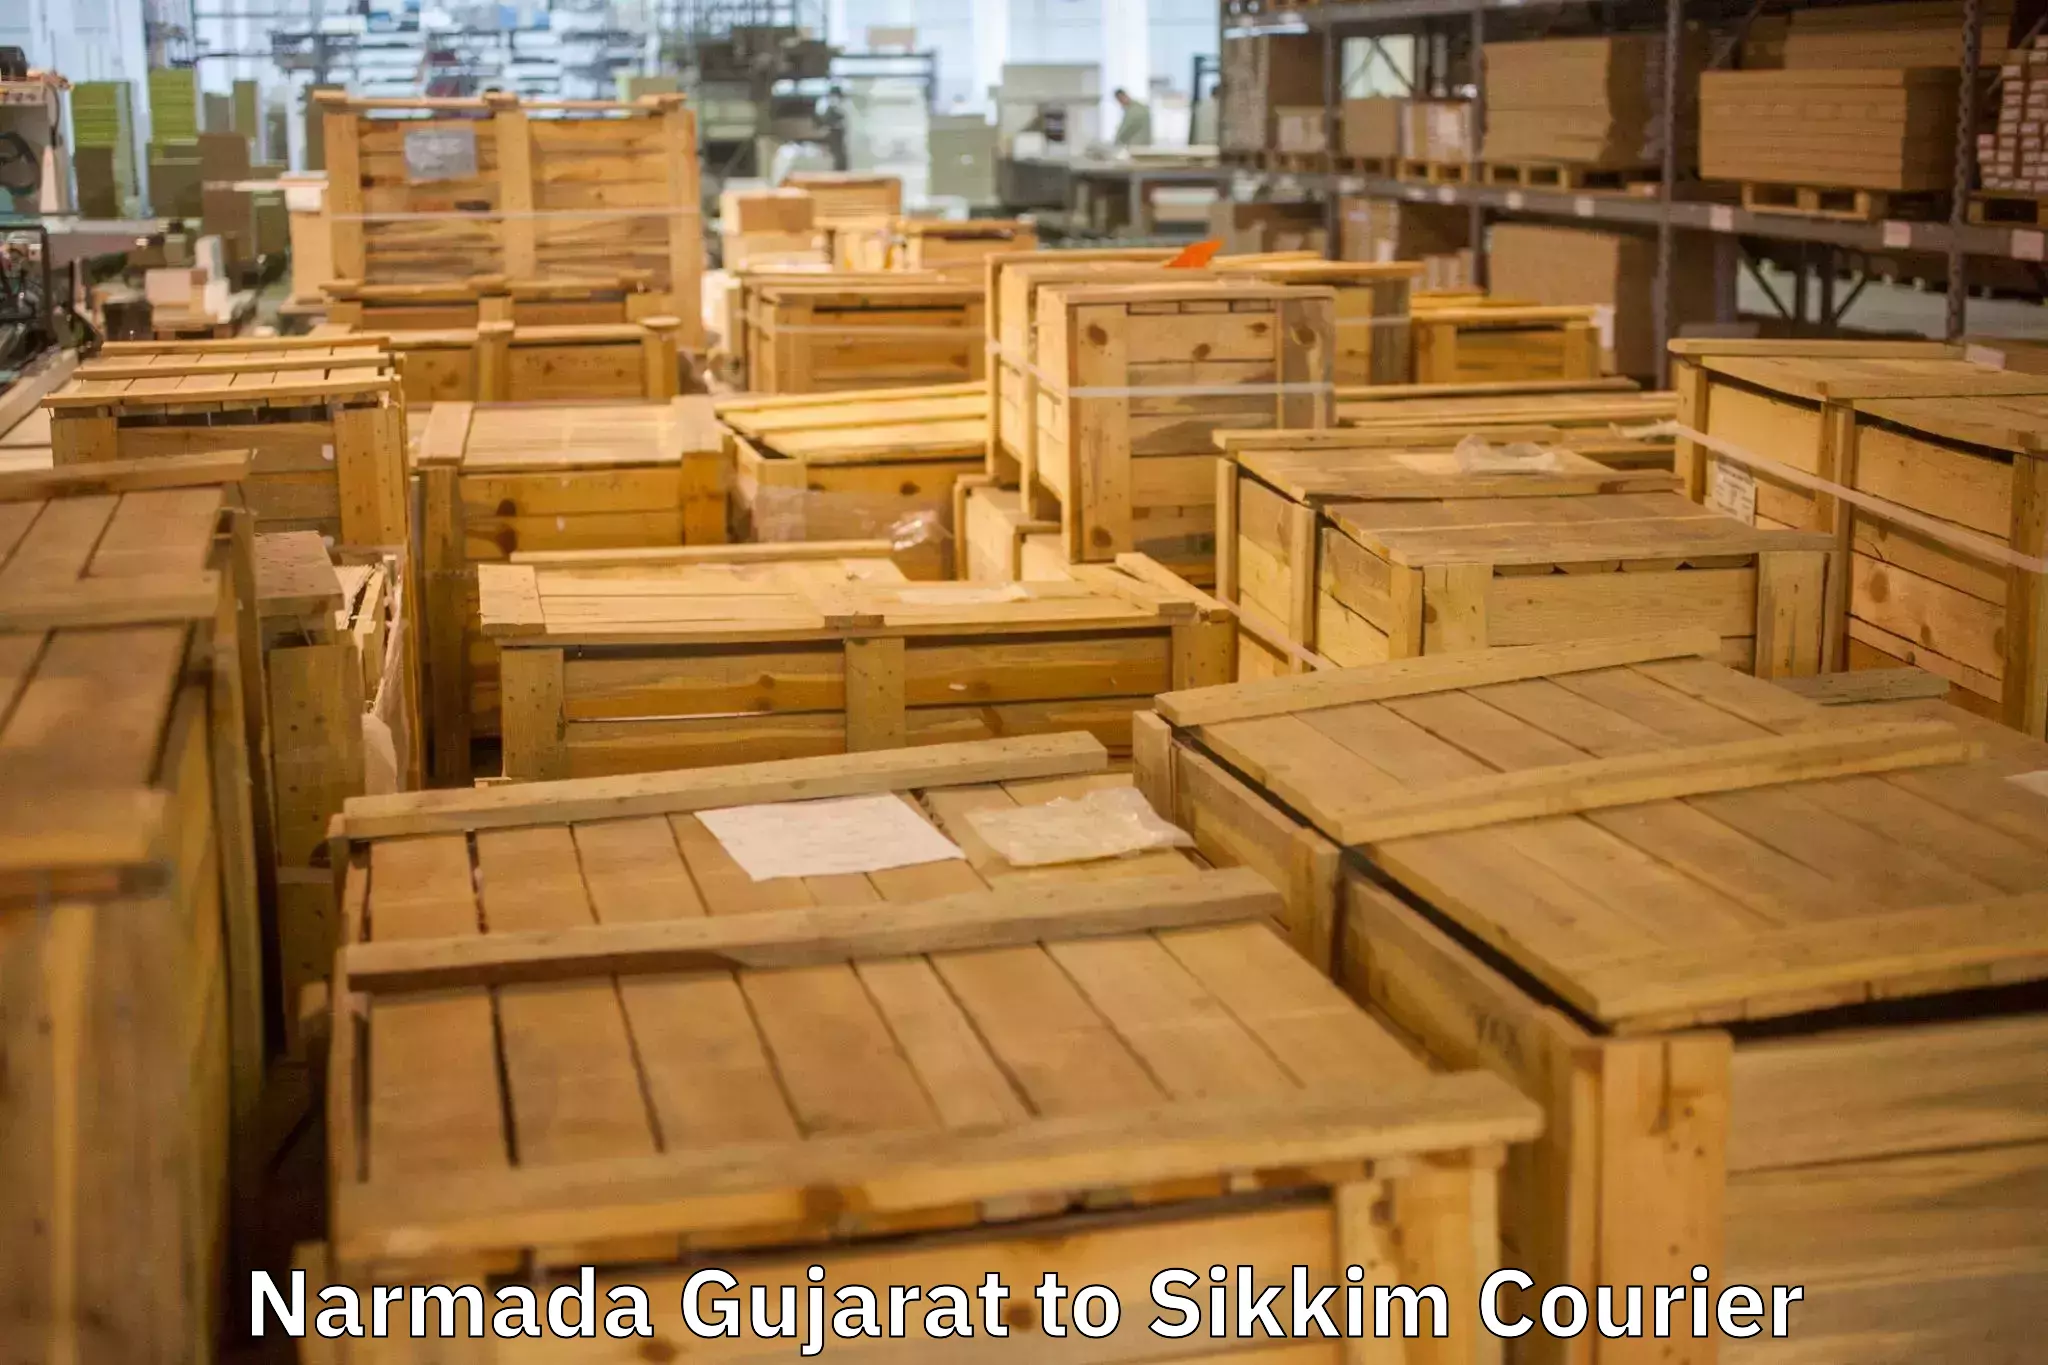 Expert goods movers Narmada Gujarat to Sikkim